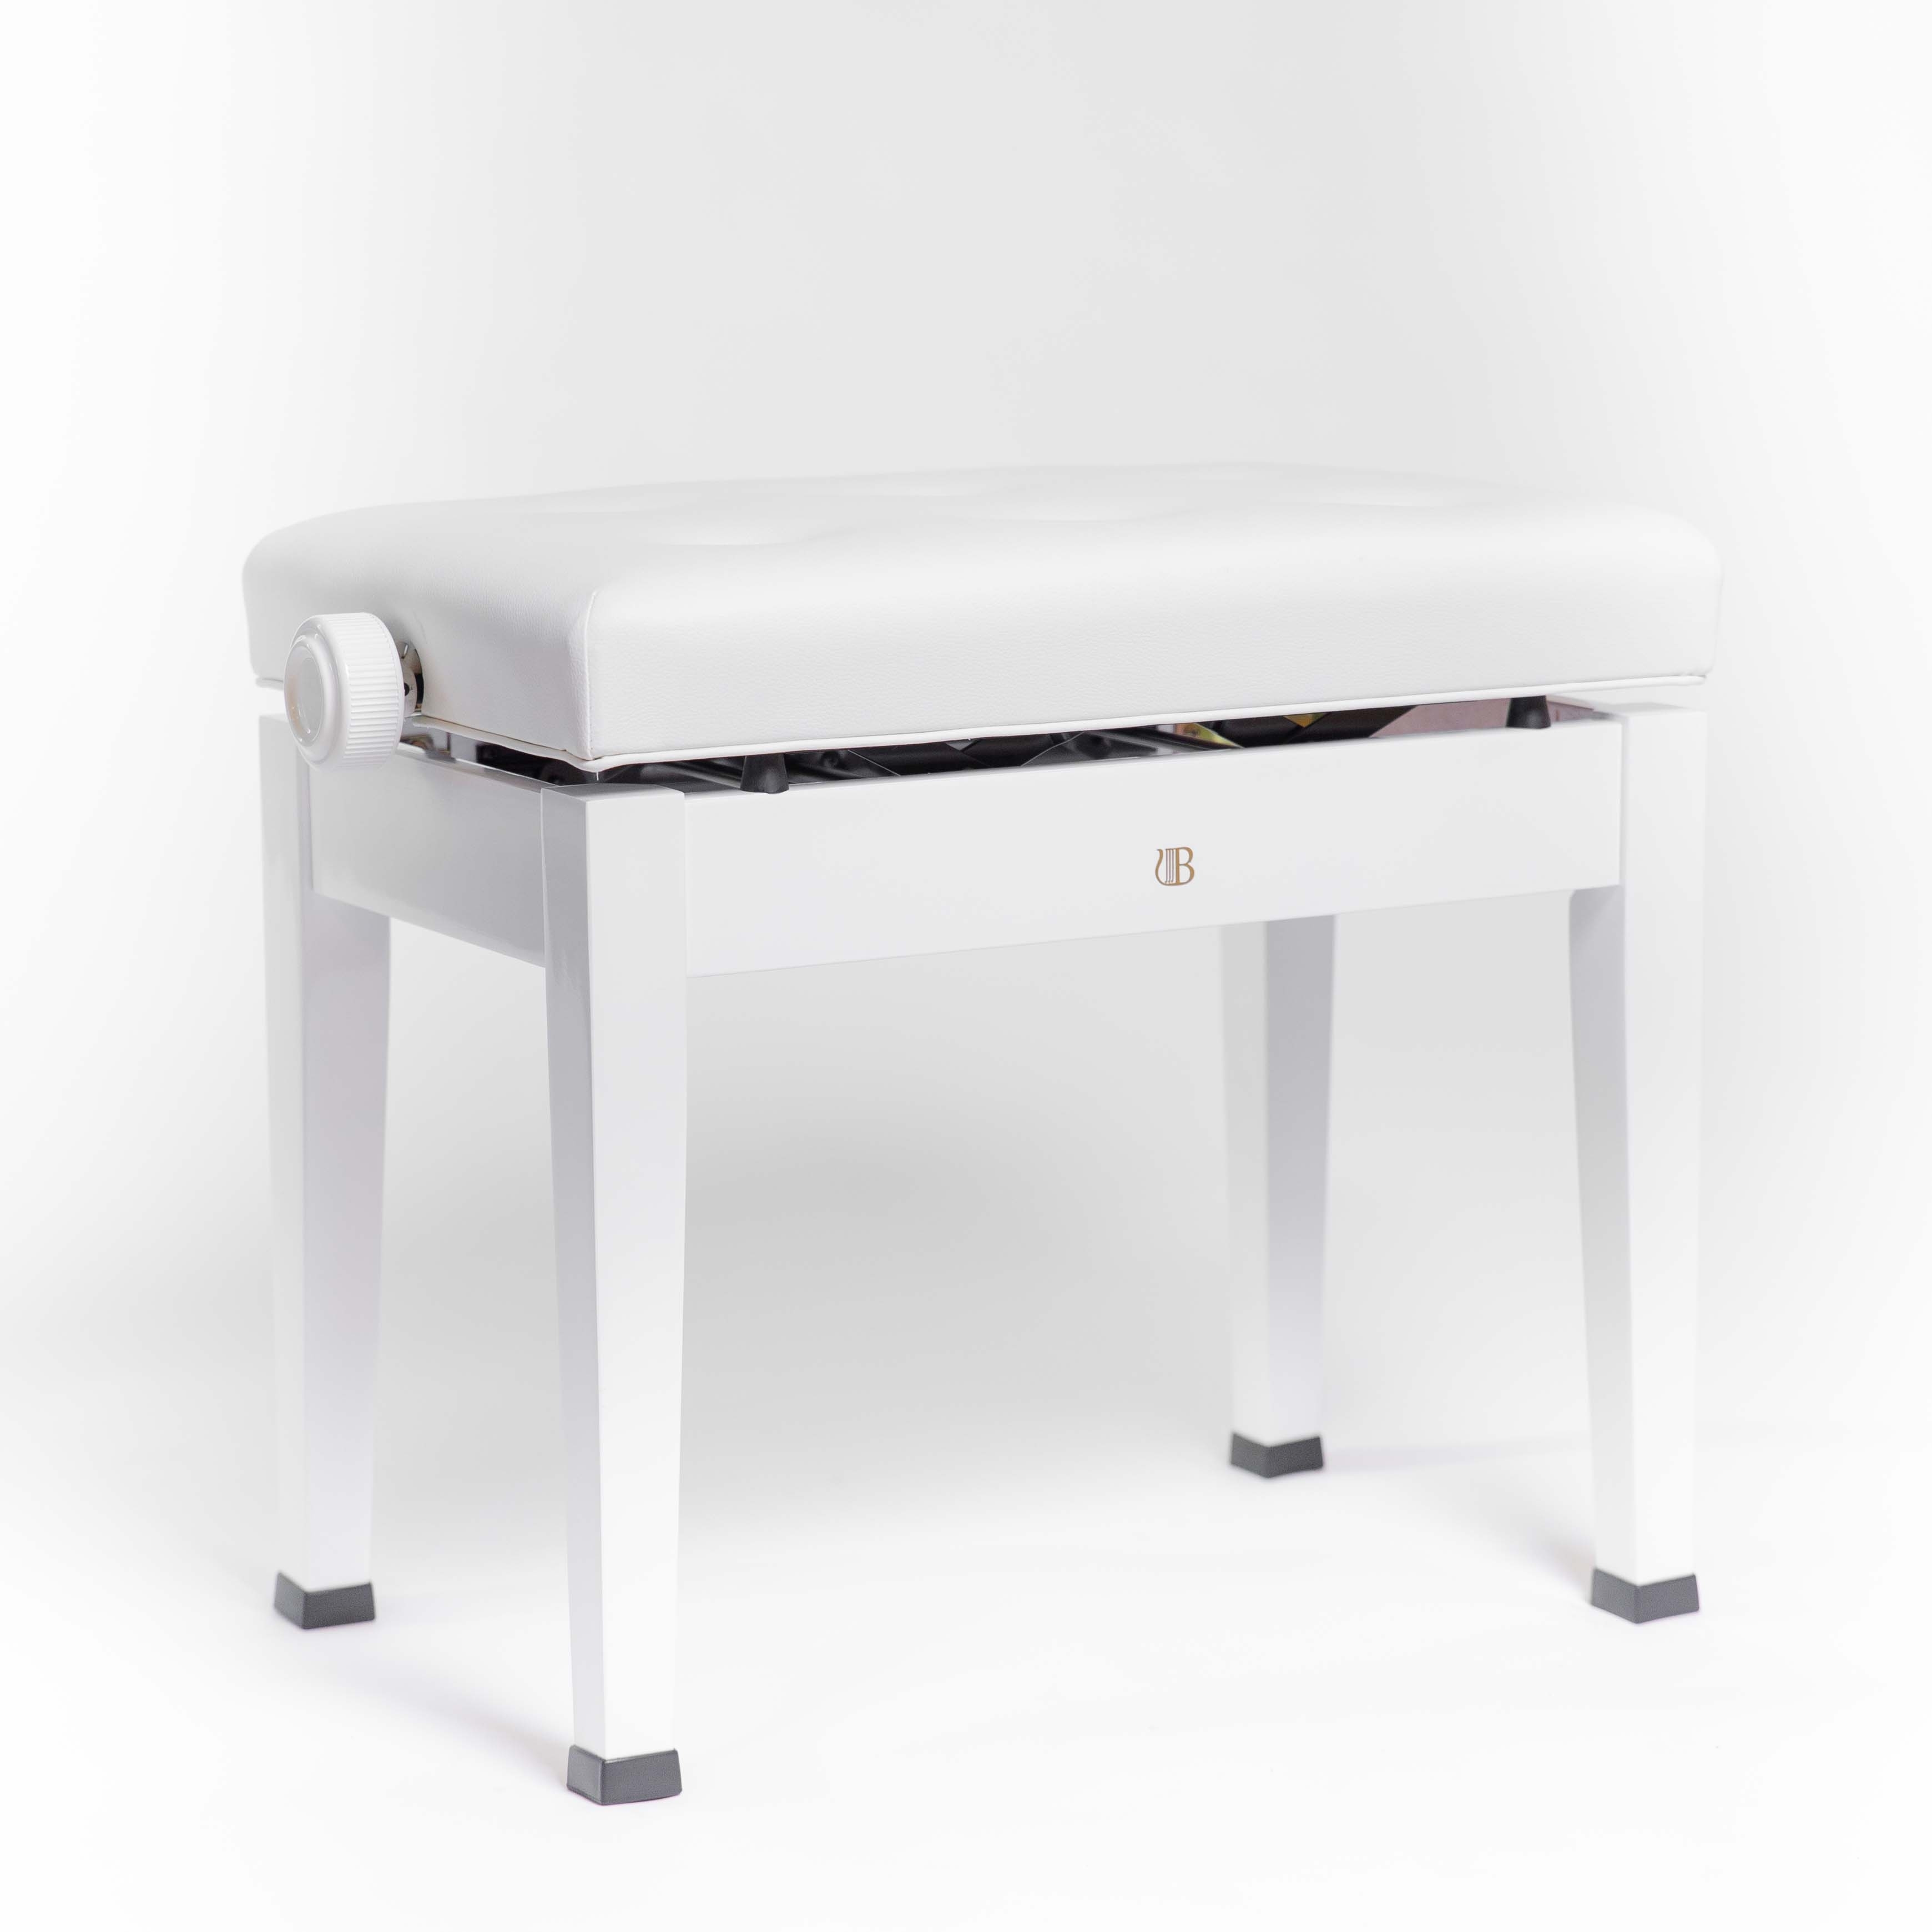 เก้าอี้เปียโนปรับระดับได้ Adjustable piano bench BRODMANN สี White 